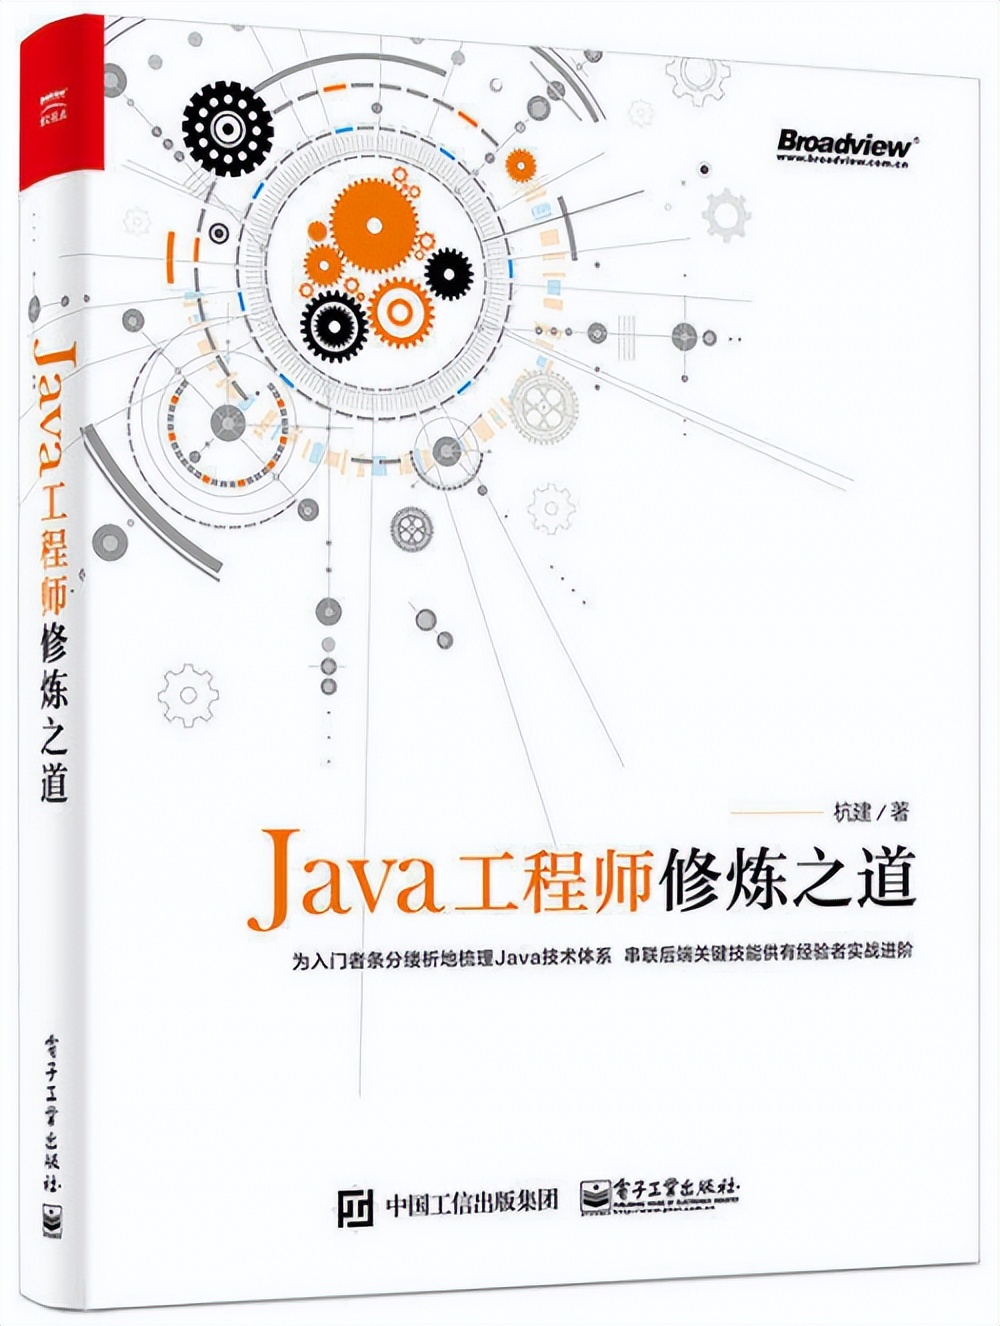 Java程序员进阶：5本不可错过的Java后端技术书籍 